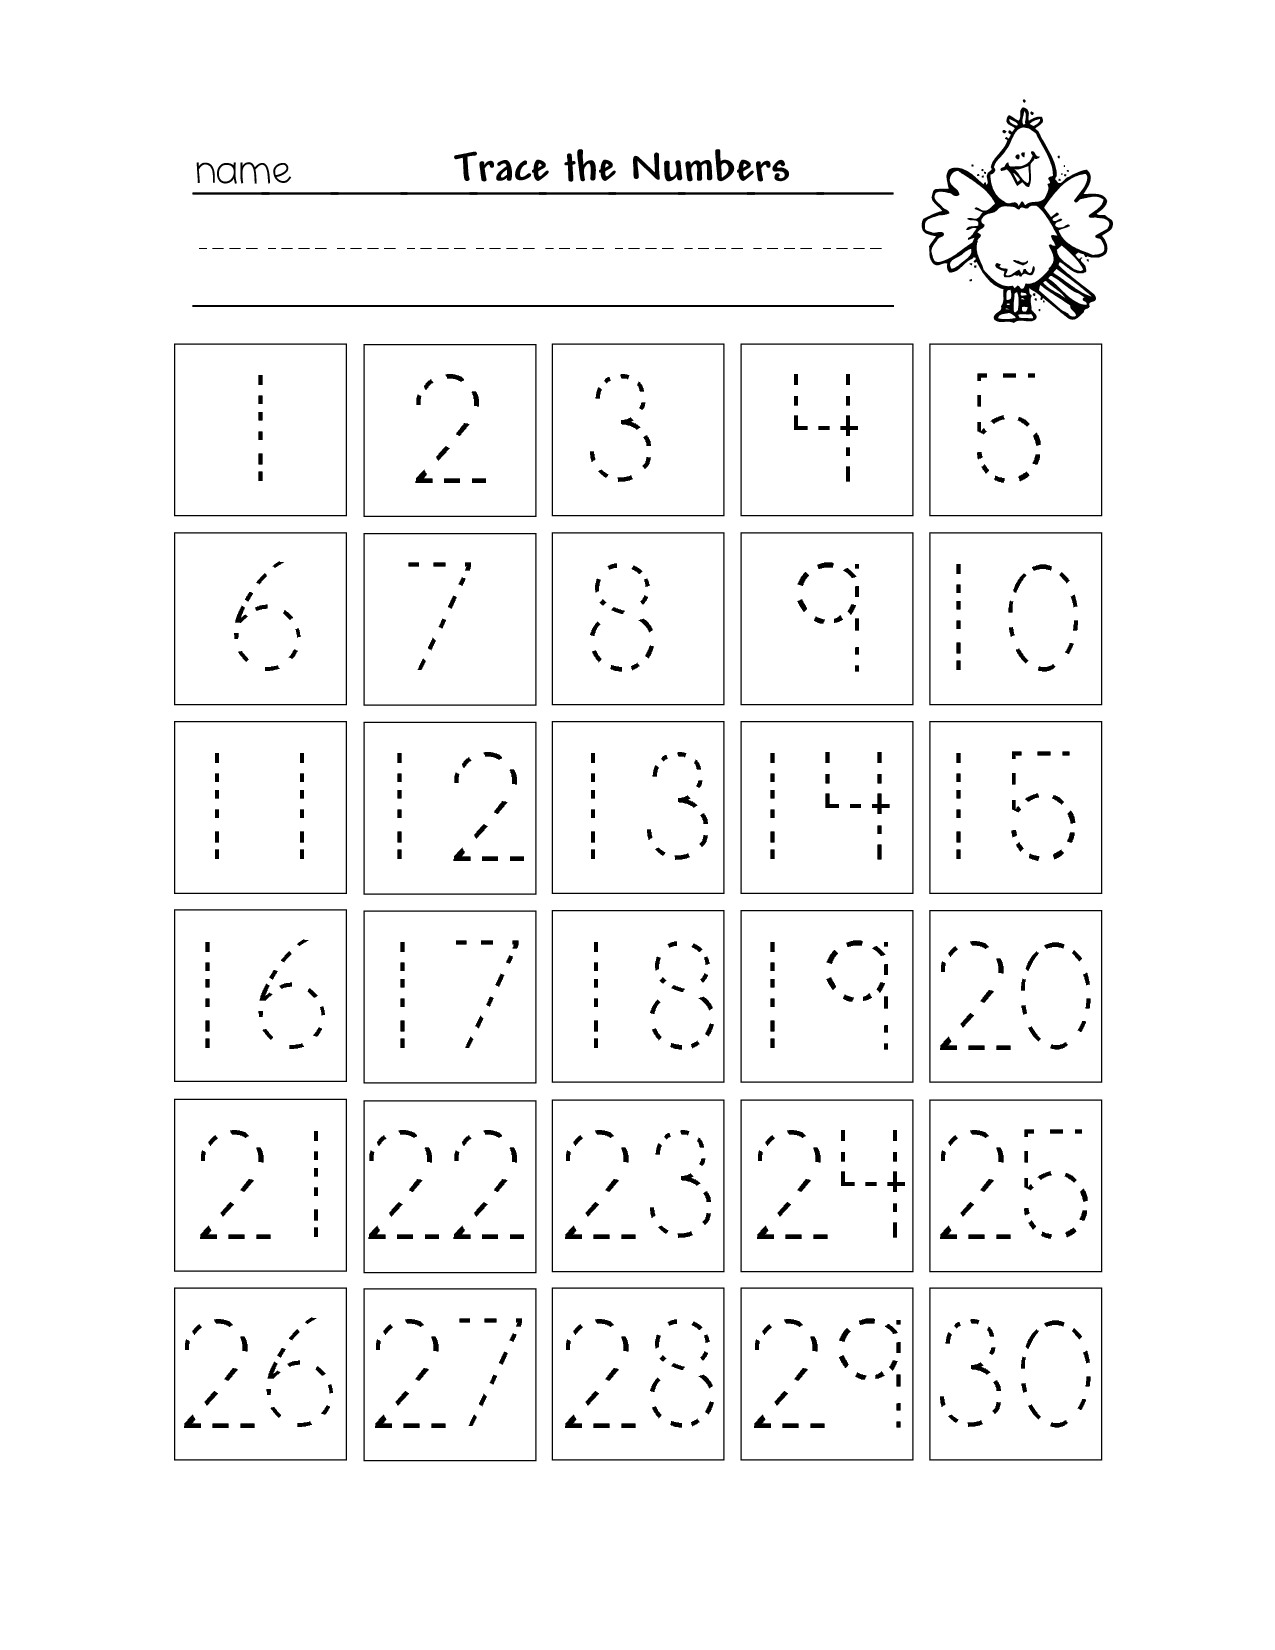 8-best-images-of-printable-numbers-1-30-worksheet-printable-missing-numbers-worksheets-1-30